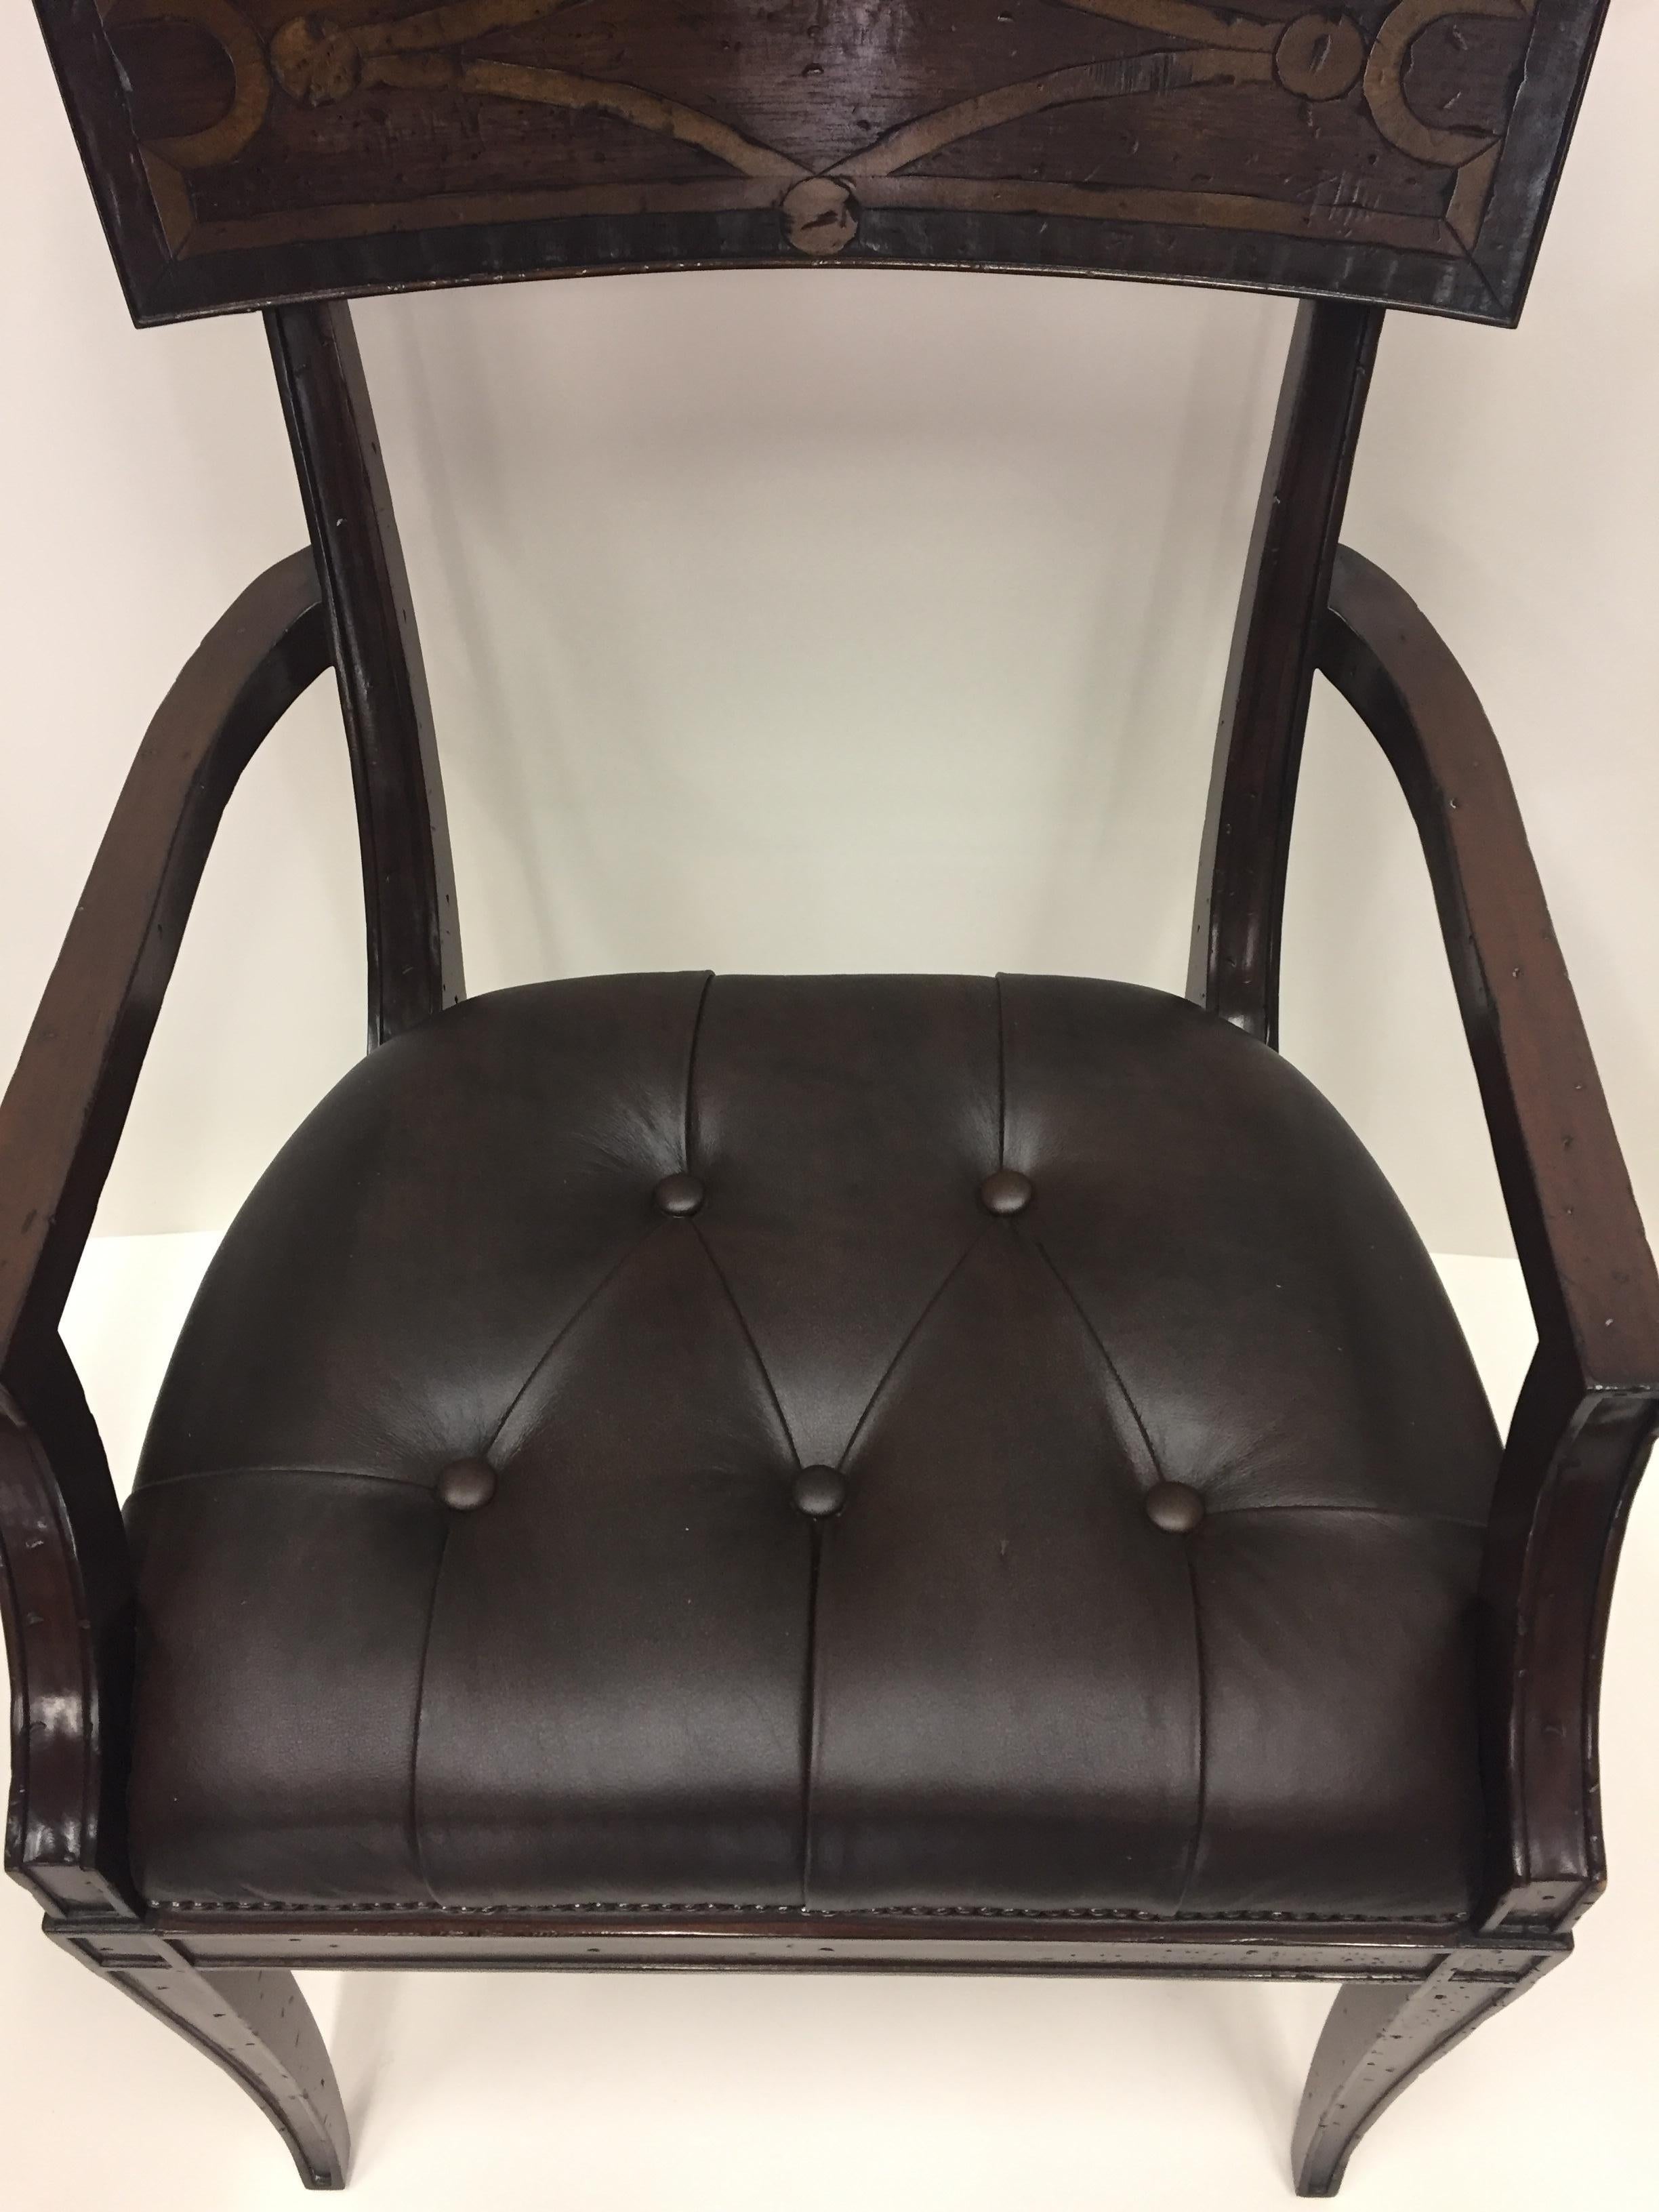 Reich aussehender Sessel im Regency-Stil mit geschnitzter und eingelegter Rückenlehne aus Mahagoni, elegant geformten Armlehnen und sich verjüngenden Beinen, hübsch gepolstert mit einem getufteten Sitz aus schokoladenbraunem Leder.